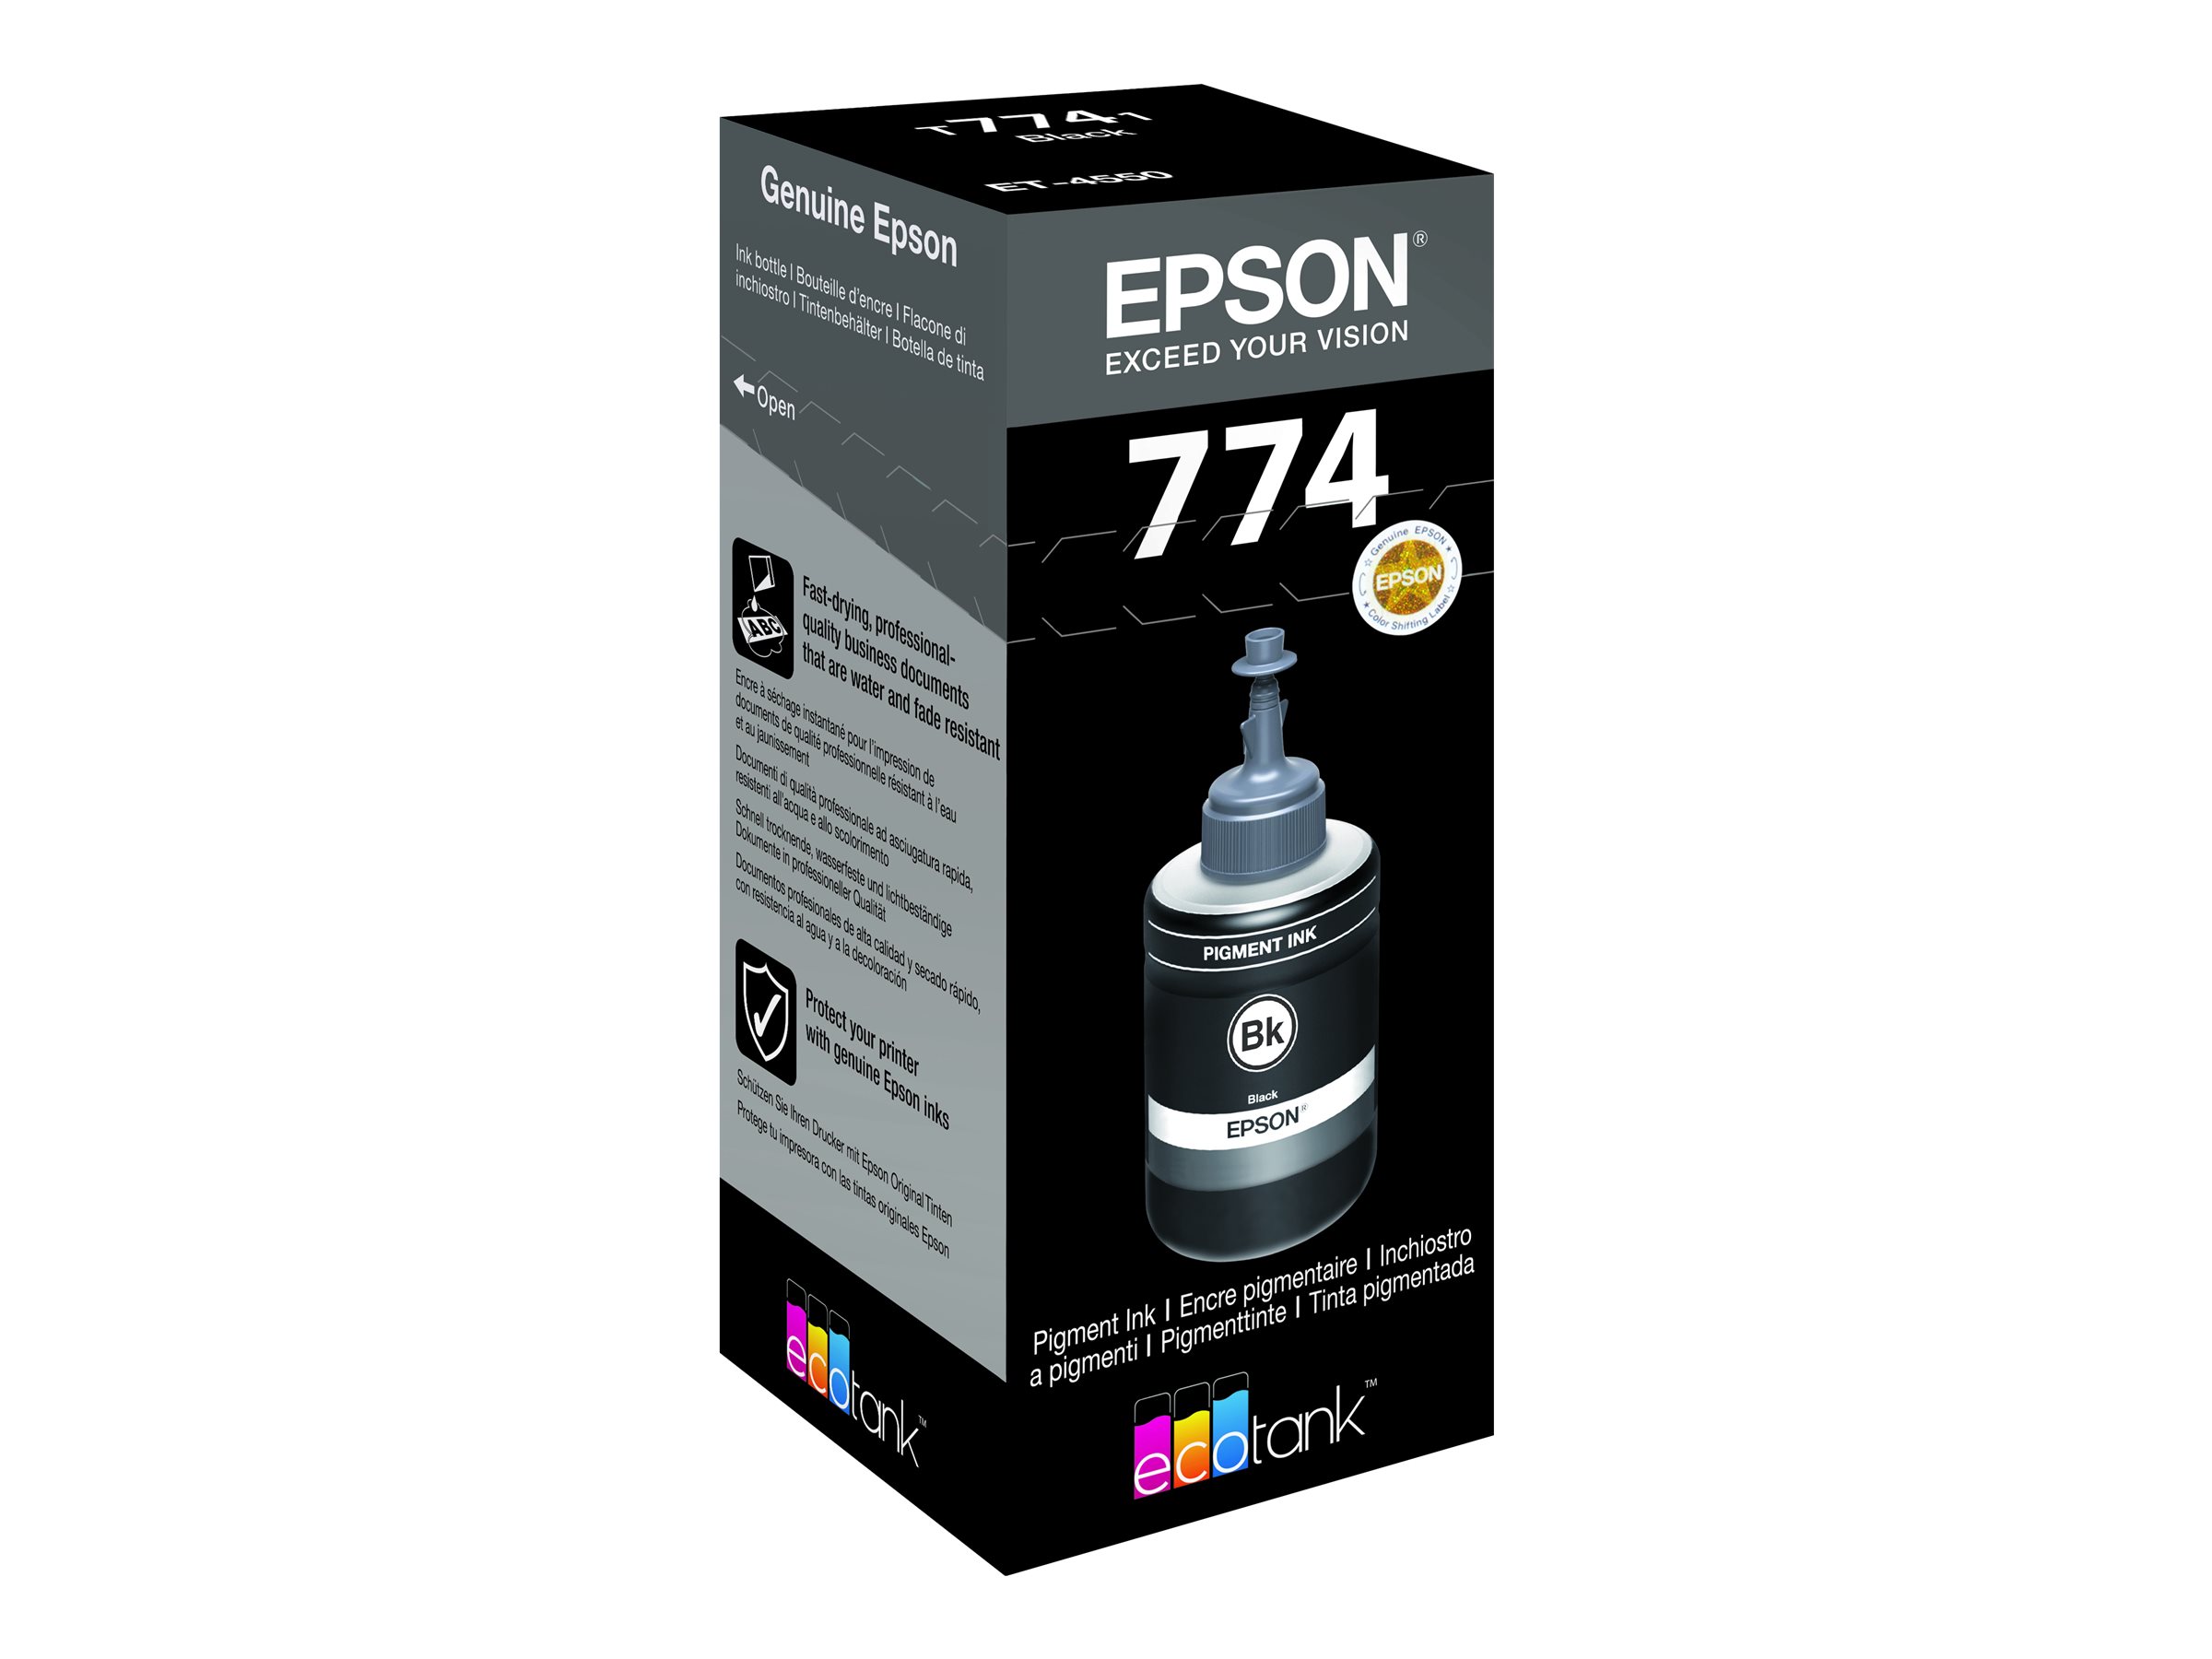 Epson T7741 - 140 ml - noir - original - recharge d'encre - pour EcoTank ET-16500, ET-3600, ET-4550, ET-4550 Stickers, M200 - C13T774140 - Réservoirs d'encre